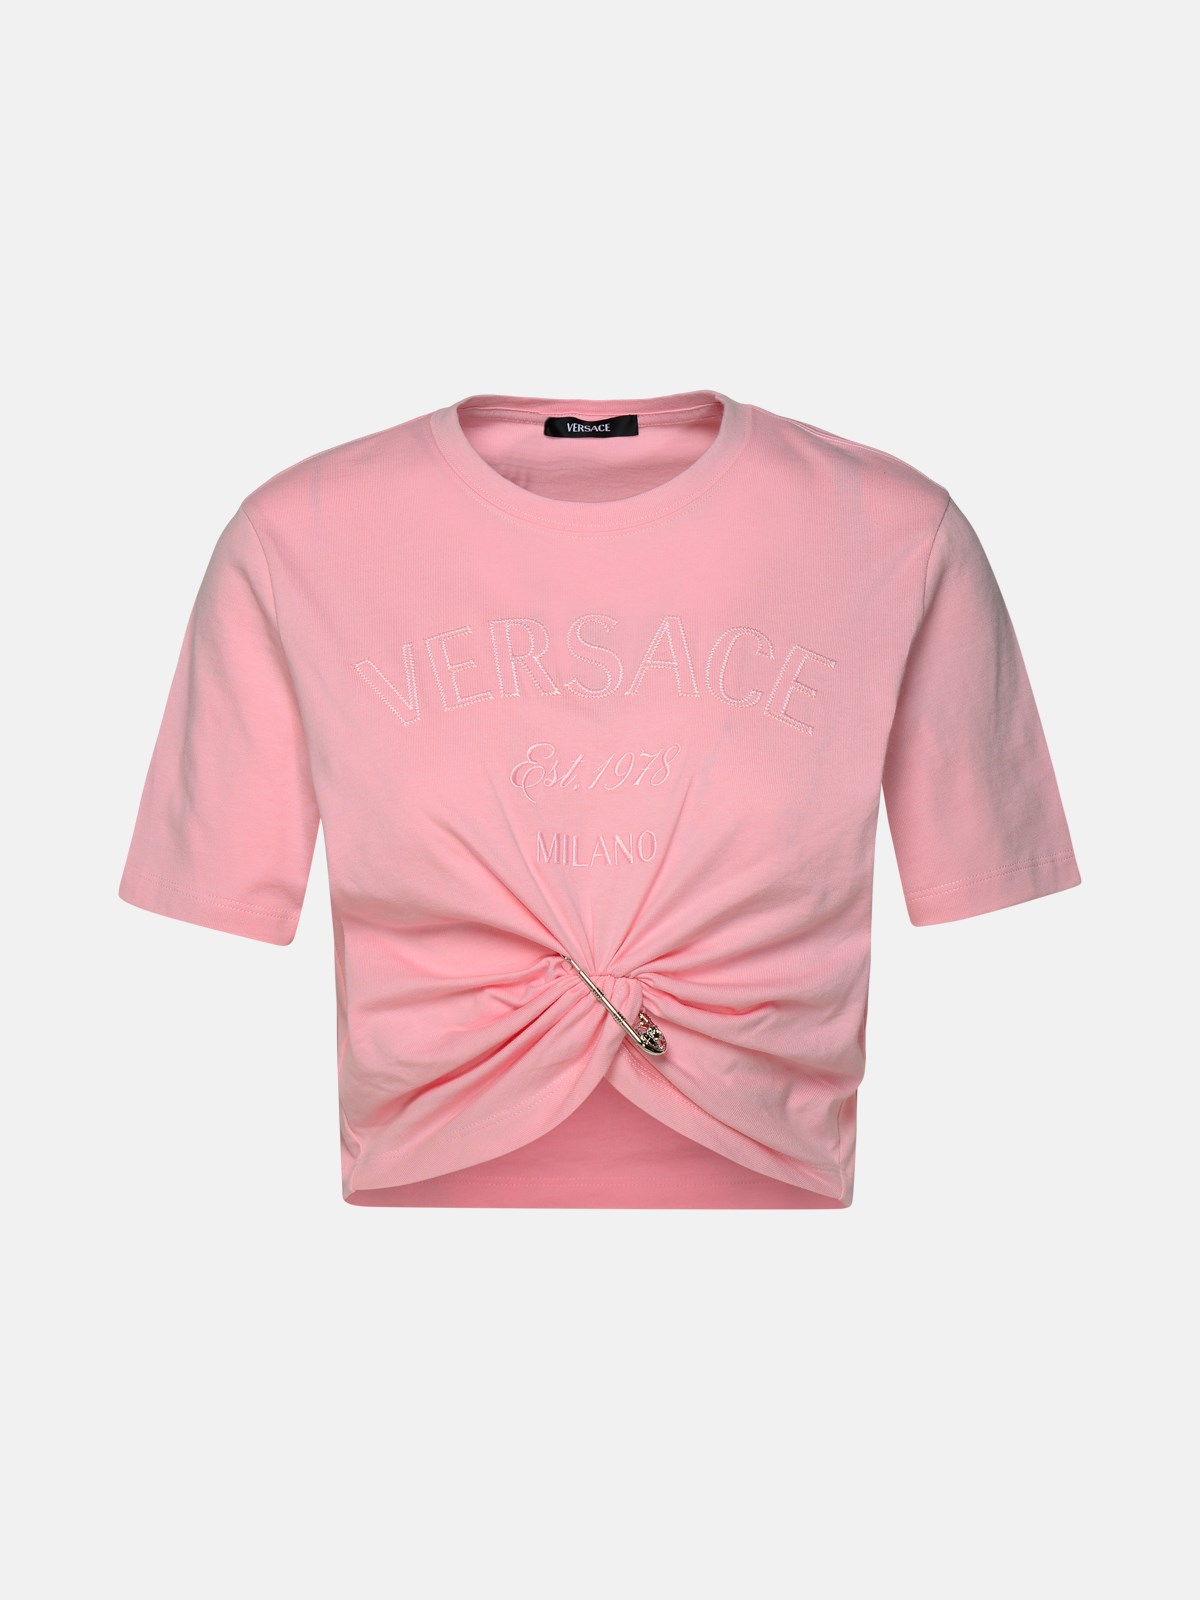 Versace Pink Cotton T-shirt